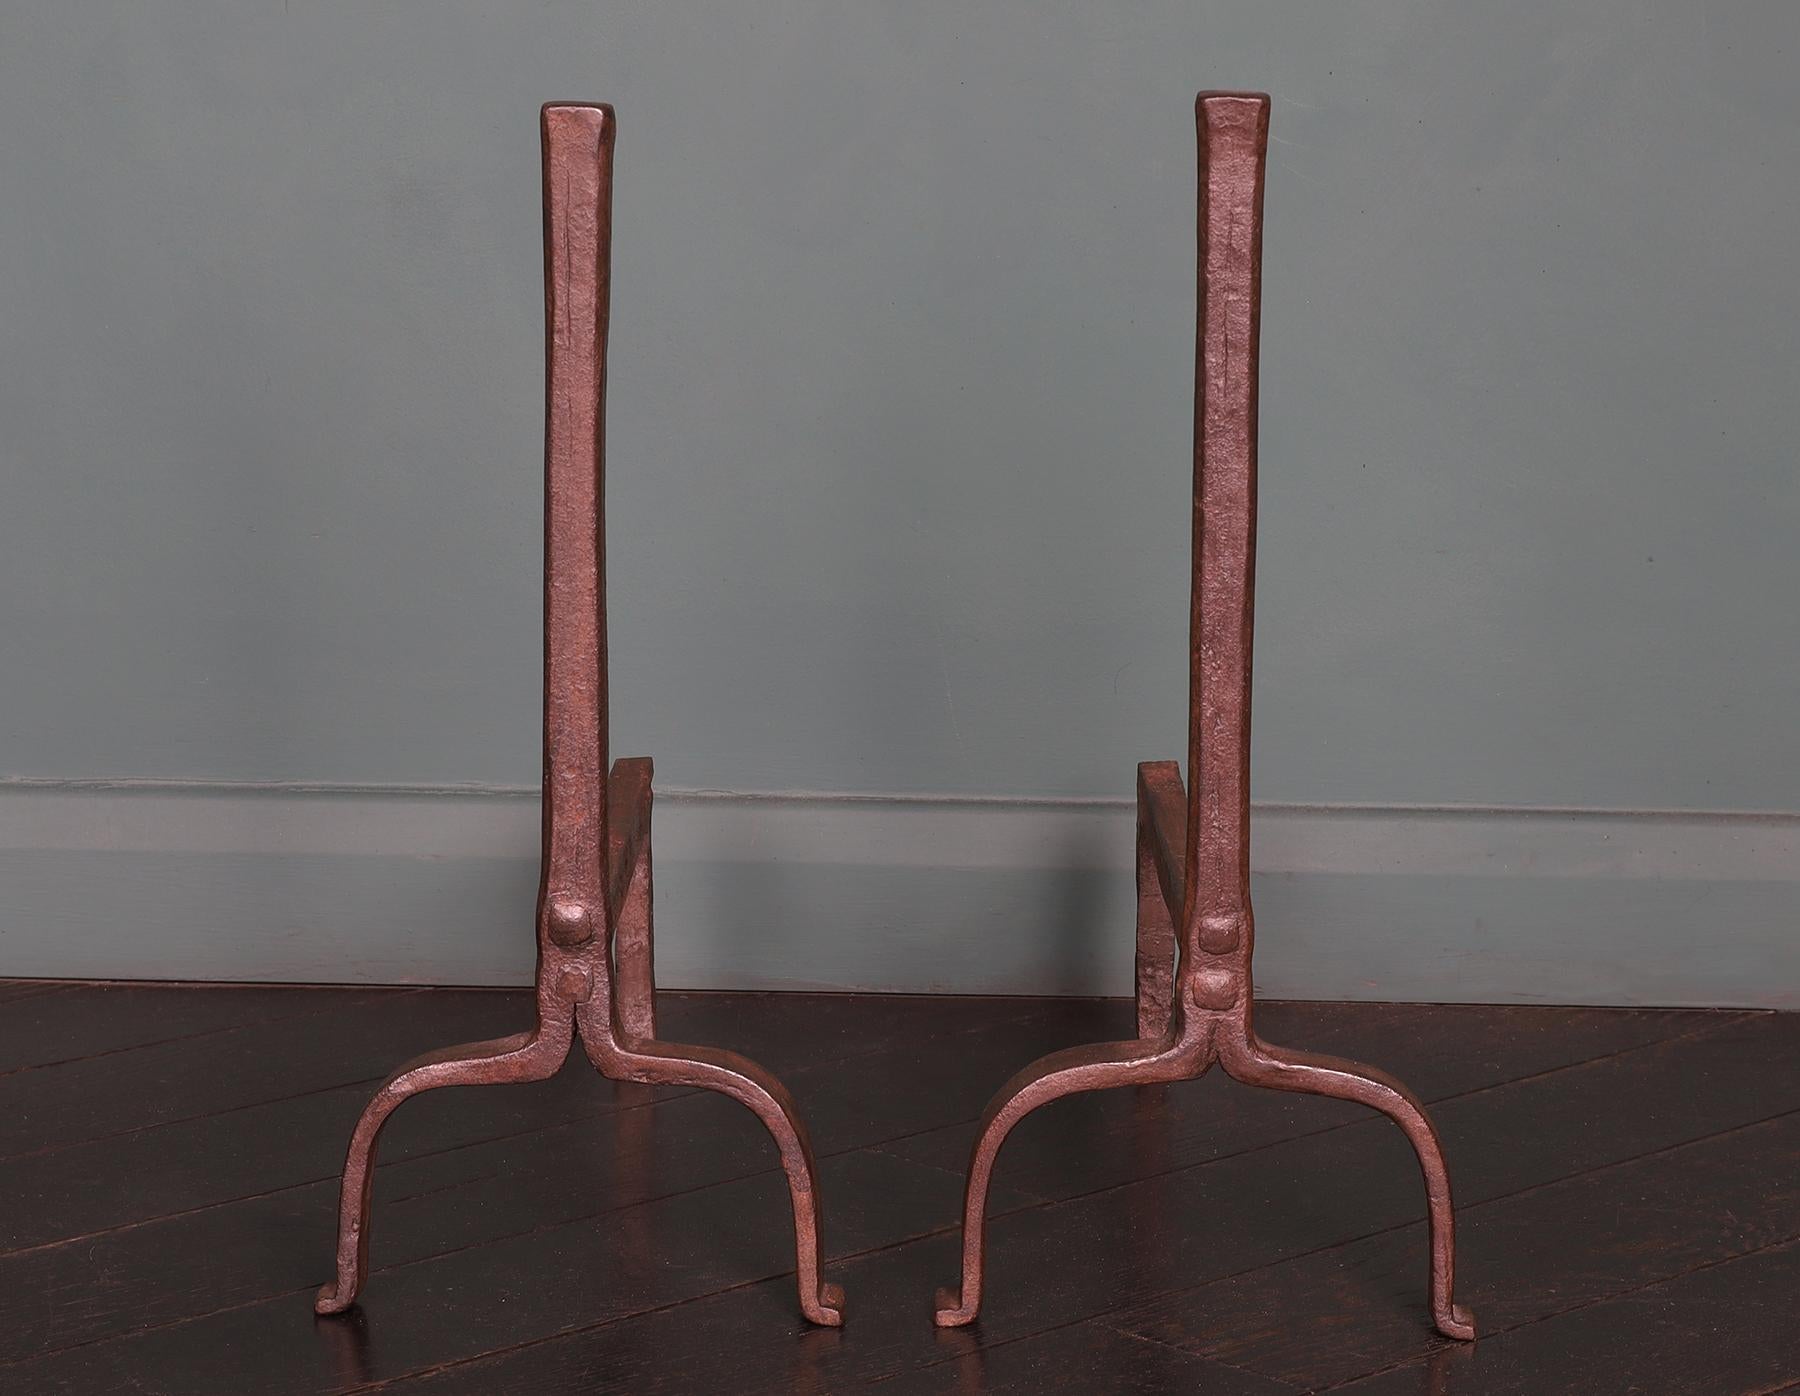 Paire de chiens de cheminée en fer forgé du XVIIIe siècle anglais. Le modèle standard est équipé d'une capote à ressaut sur des supports en arc de cercle et d'un crochet arrière.
Les supports de grumes arrière rivetés peuvent être ajustés si